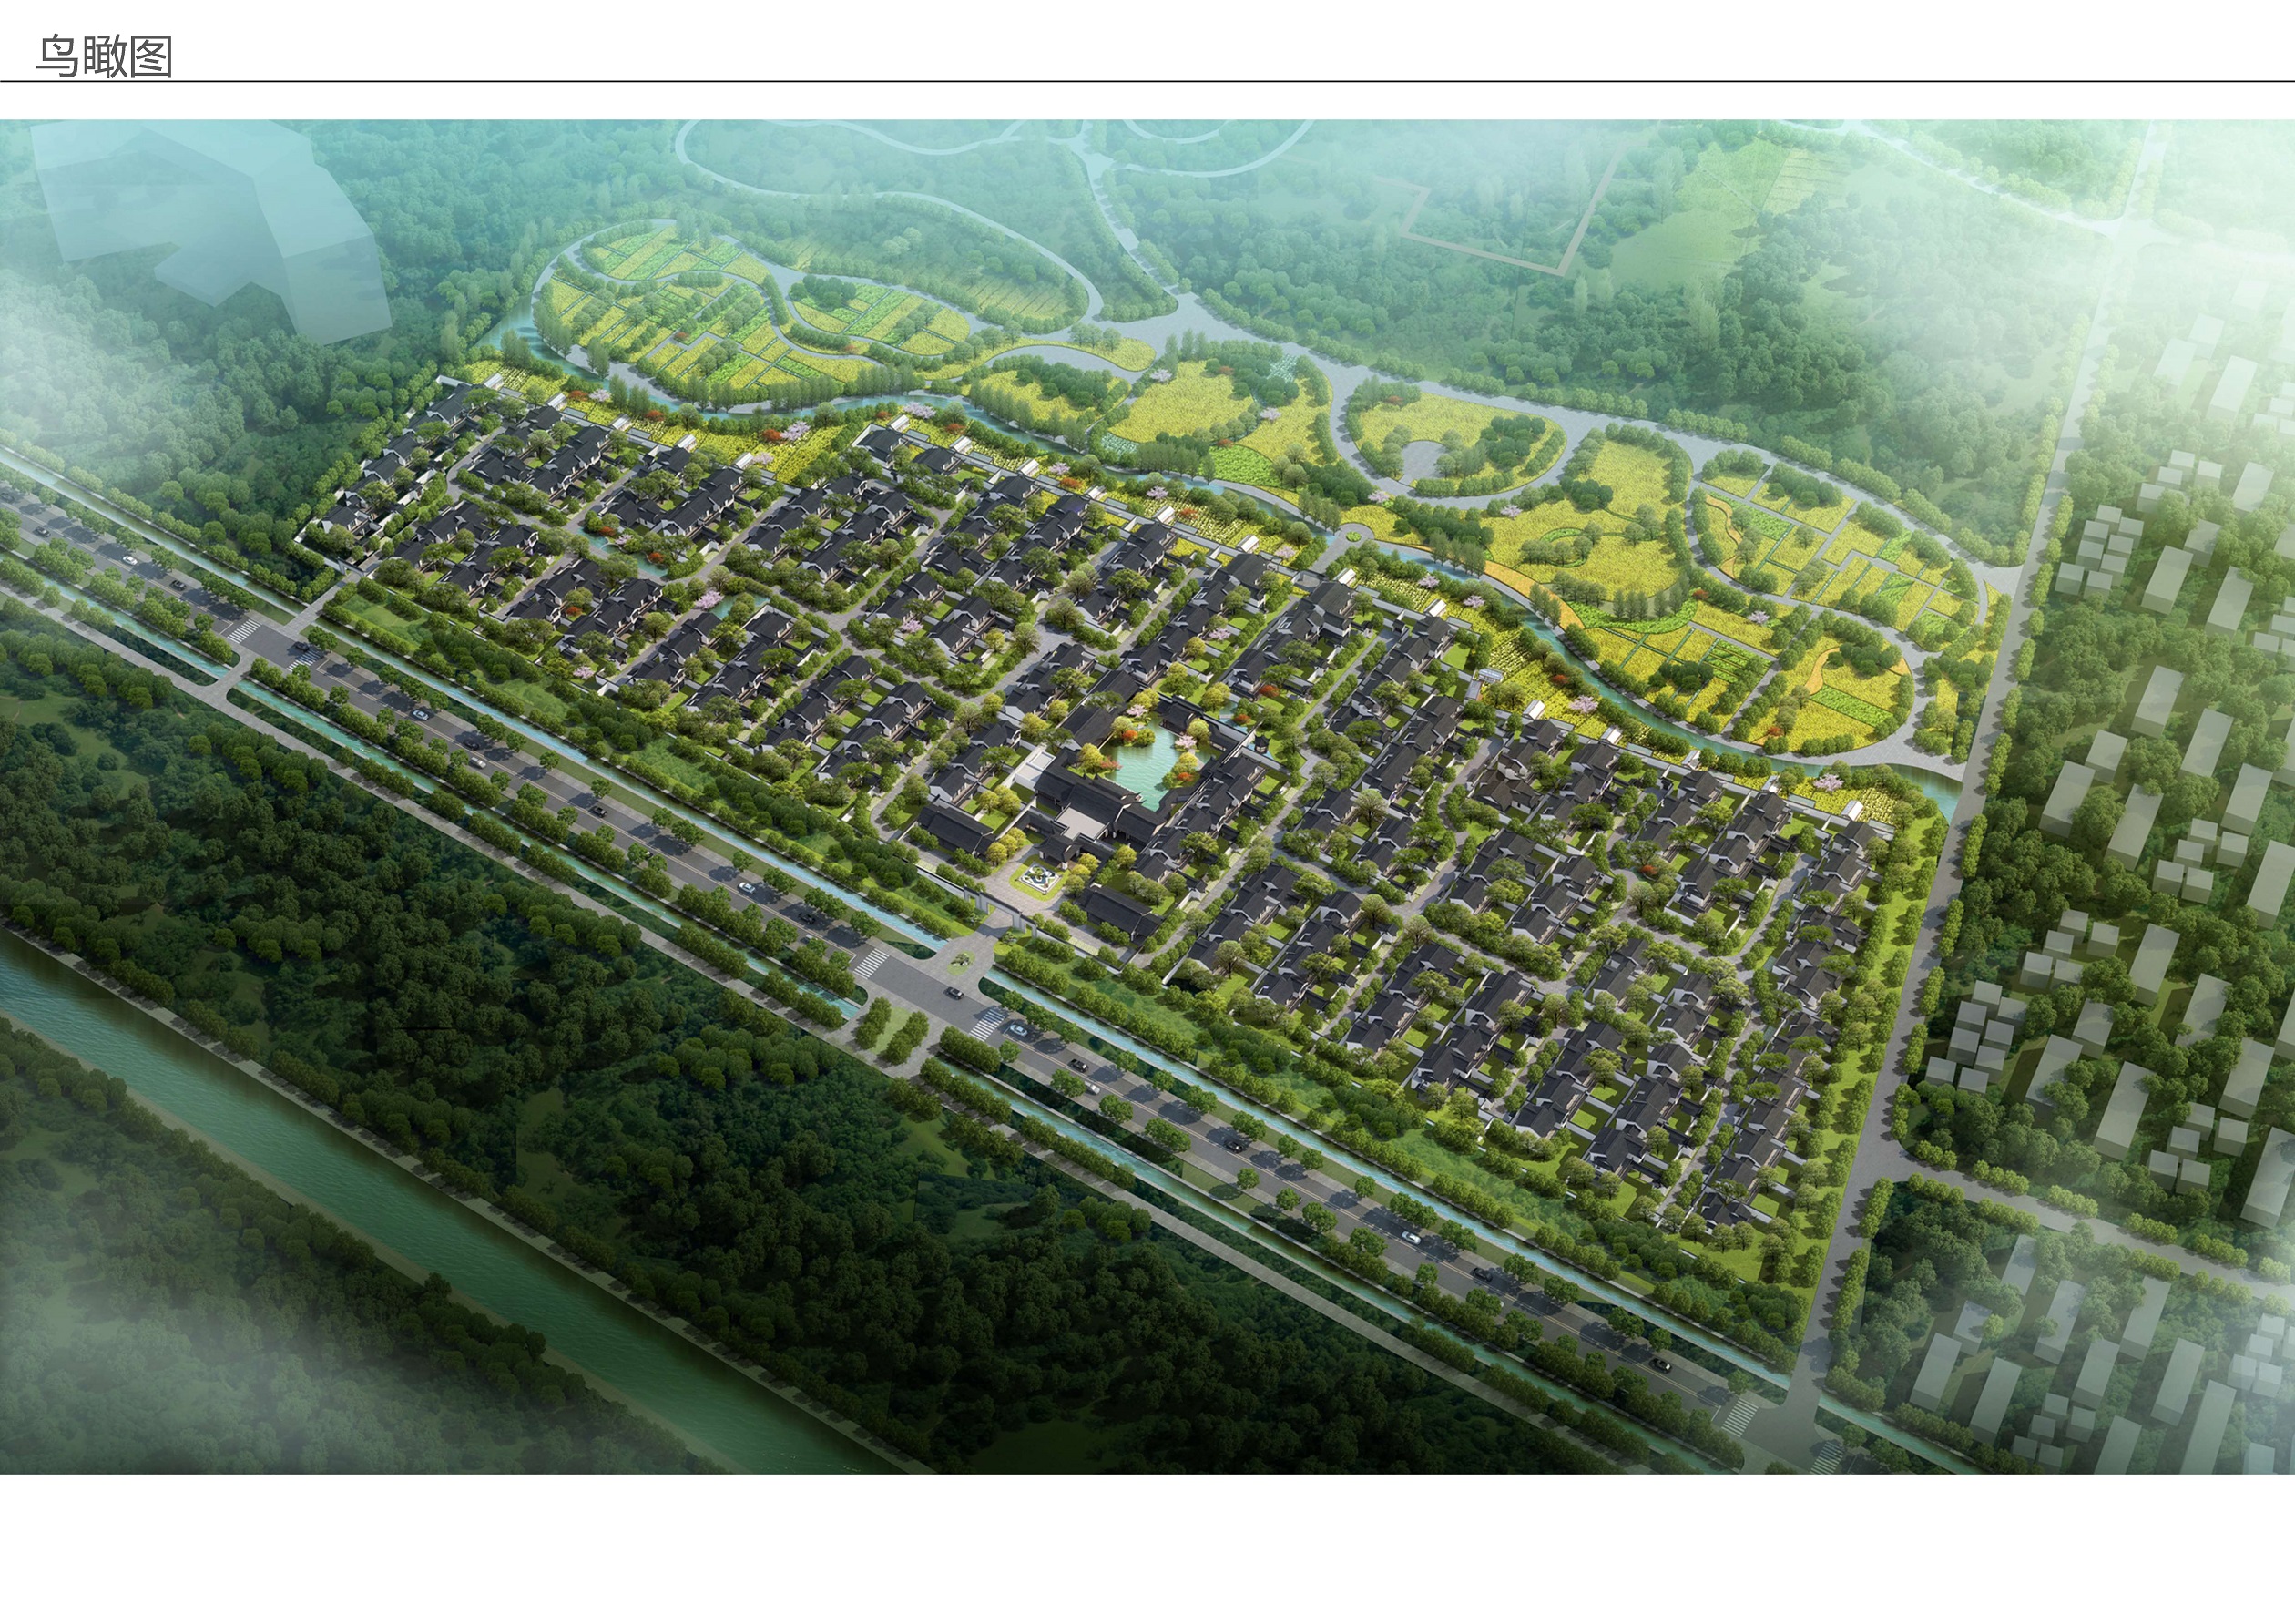 2022年4月14日鄢陵县城乡规划事务中心咨询电话:0374—7810799公示